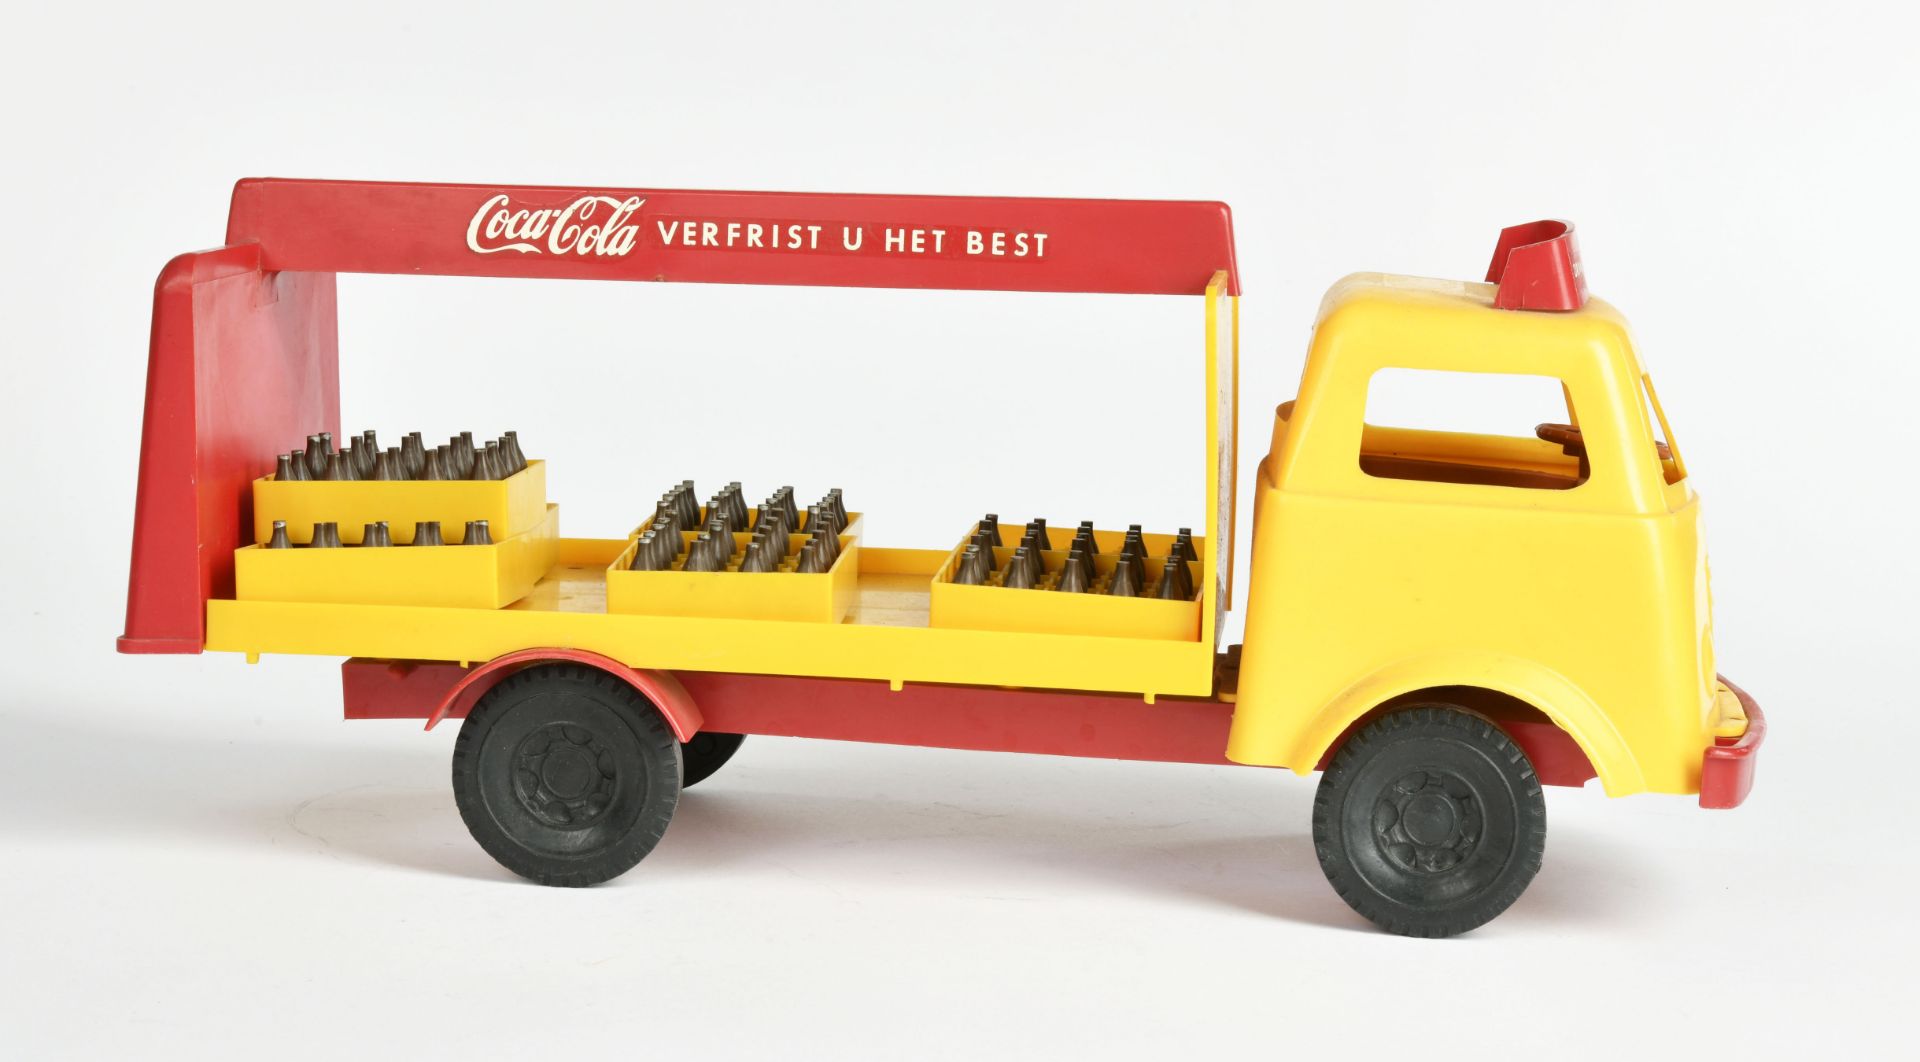 Schildkröt, Coca Cola truck, 38 cm, plastic, with bottles, min. paint d. - Image 2 of 3